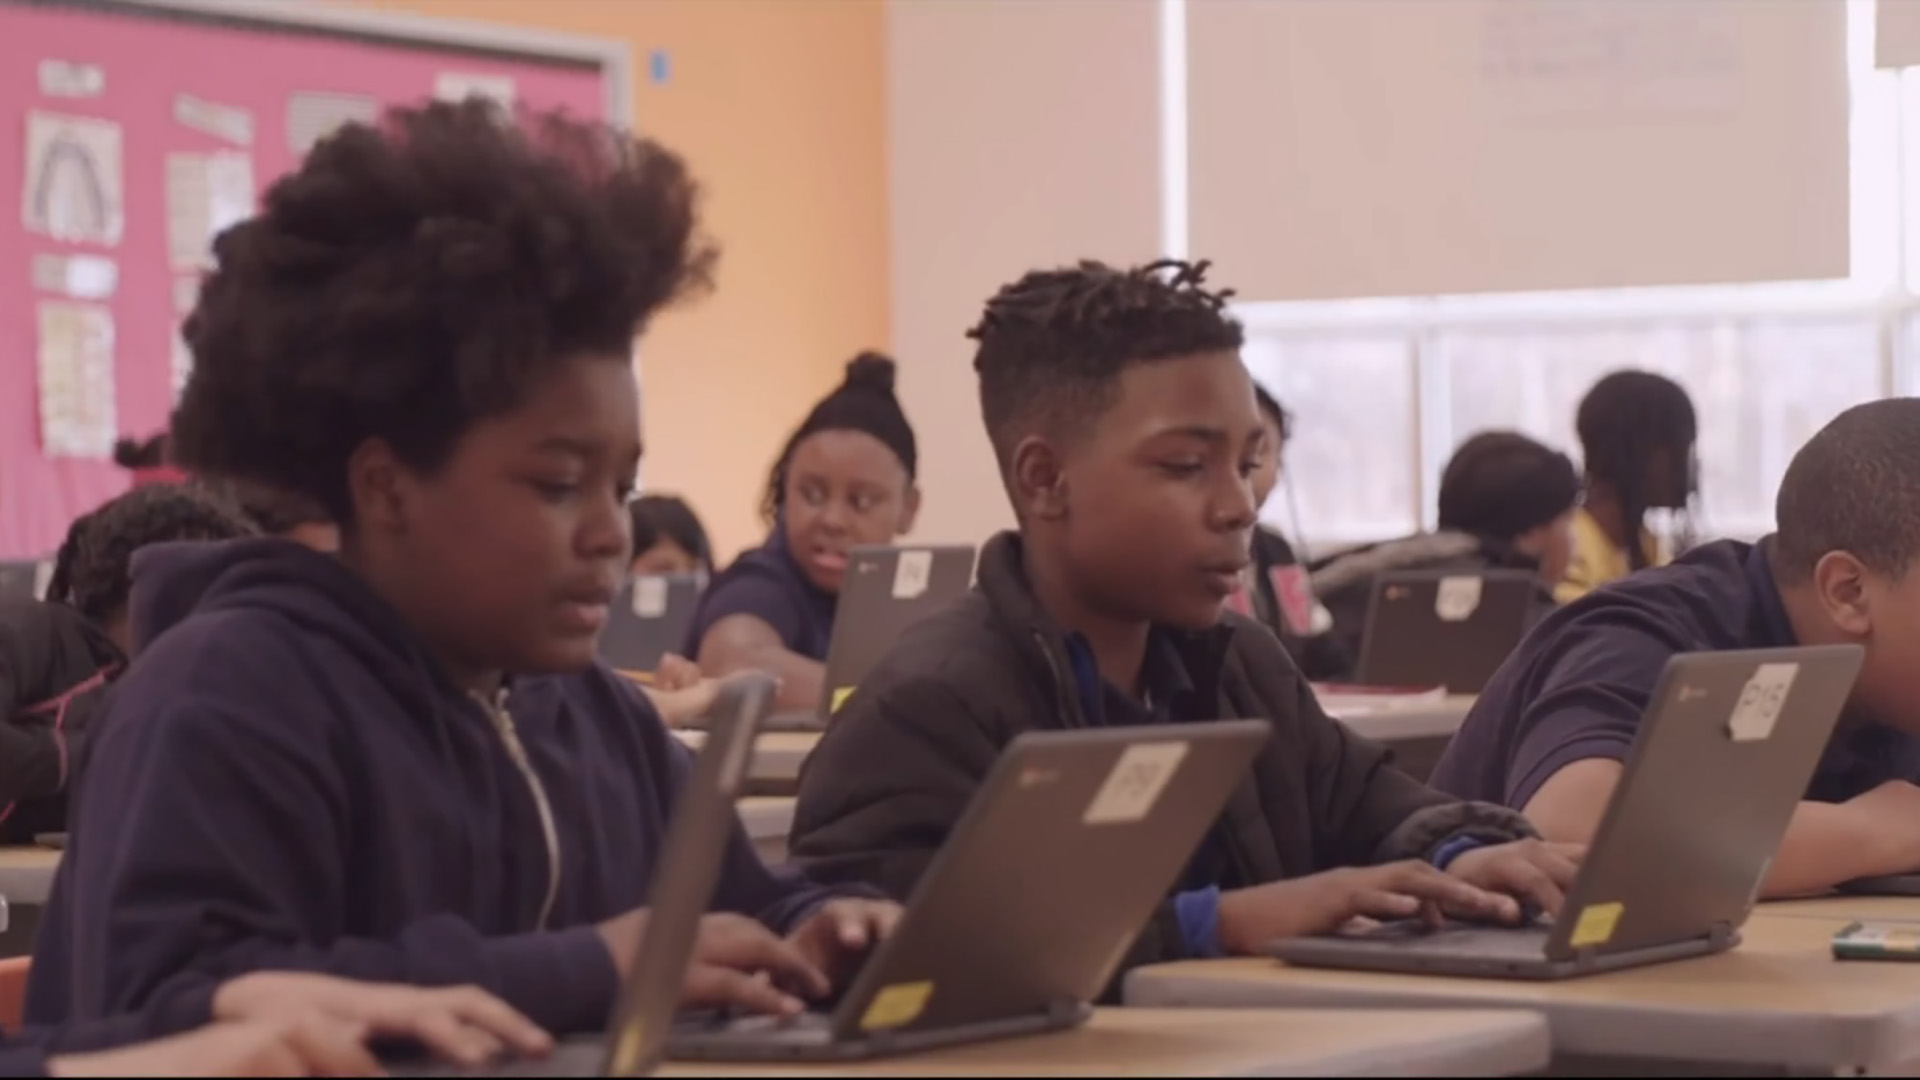 Les élèves de l’école primaire et secondaire de Fort Worthington utilisent les portables Lenovo dans la salle de classe